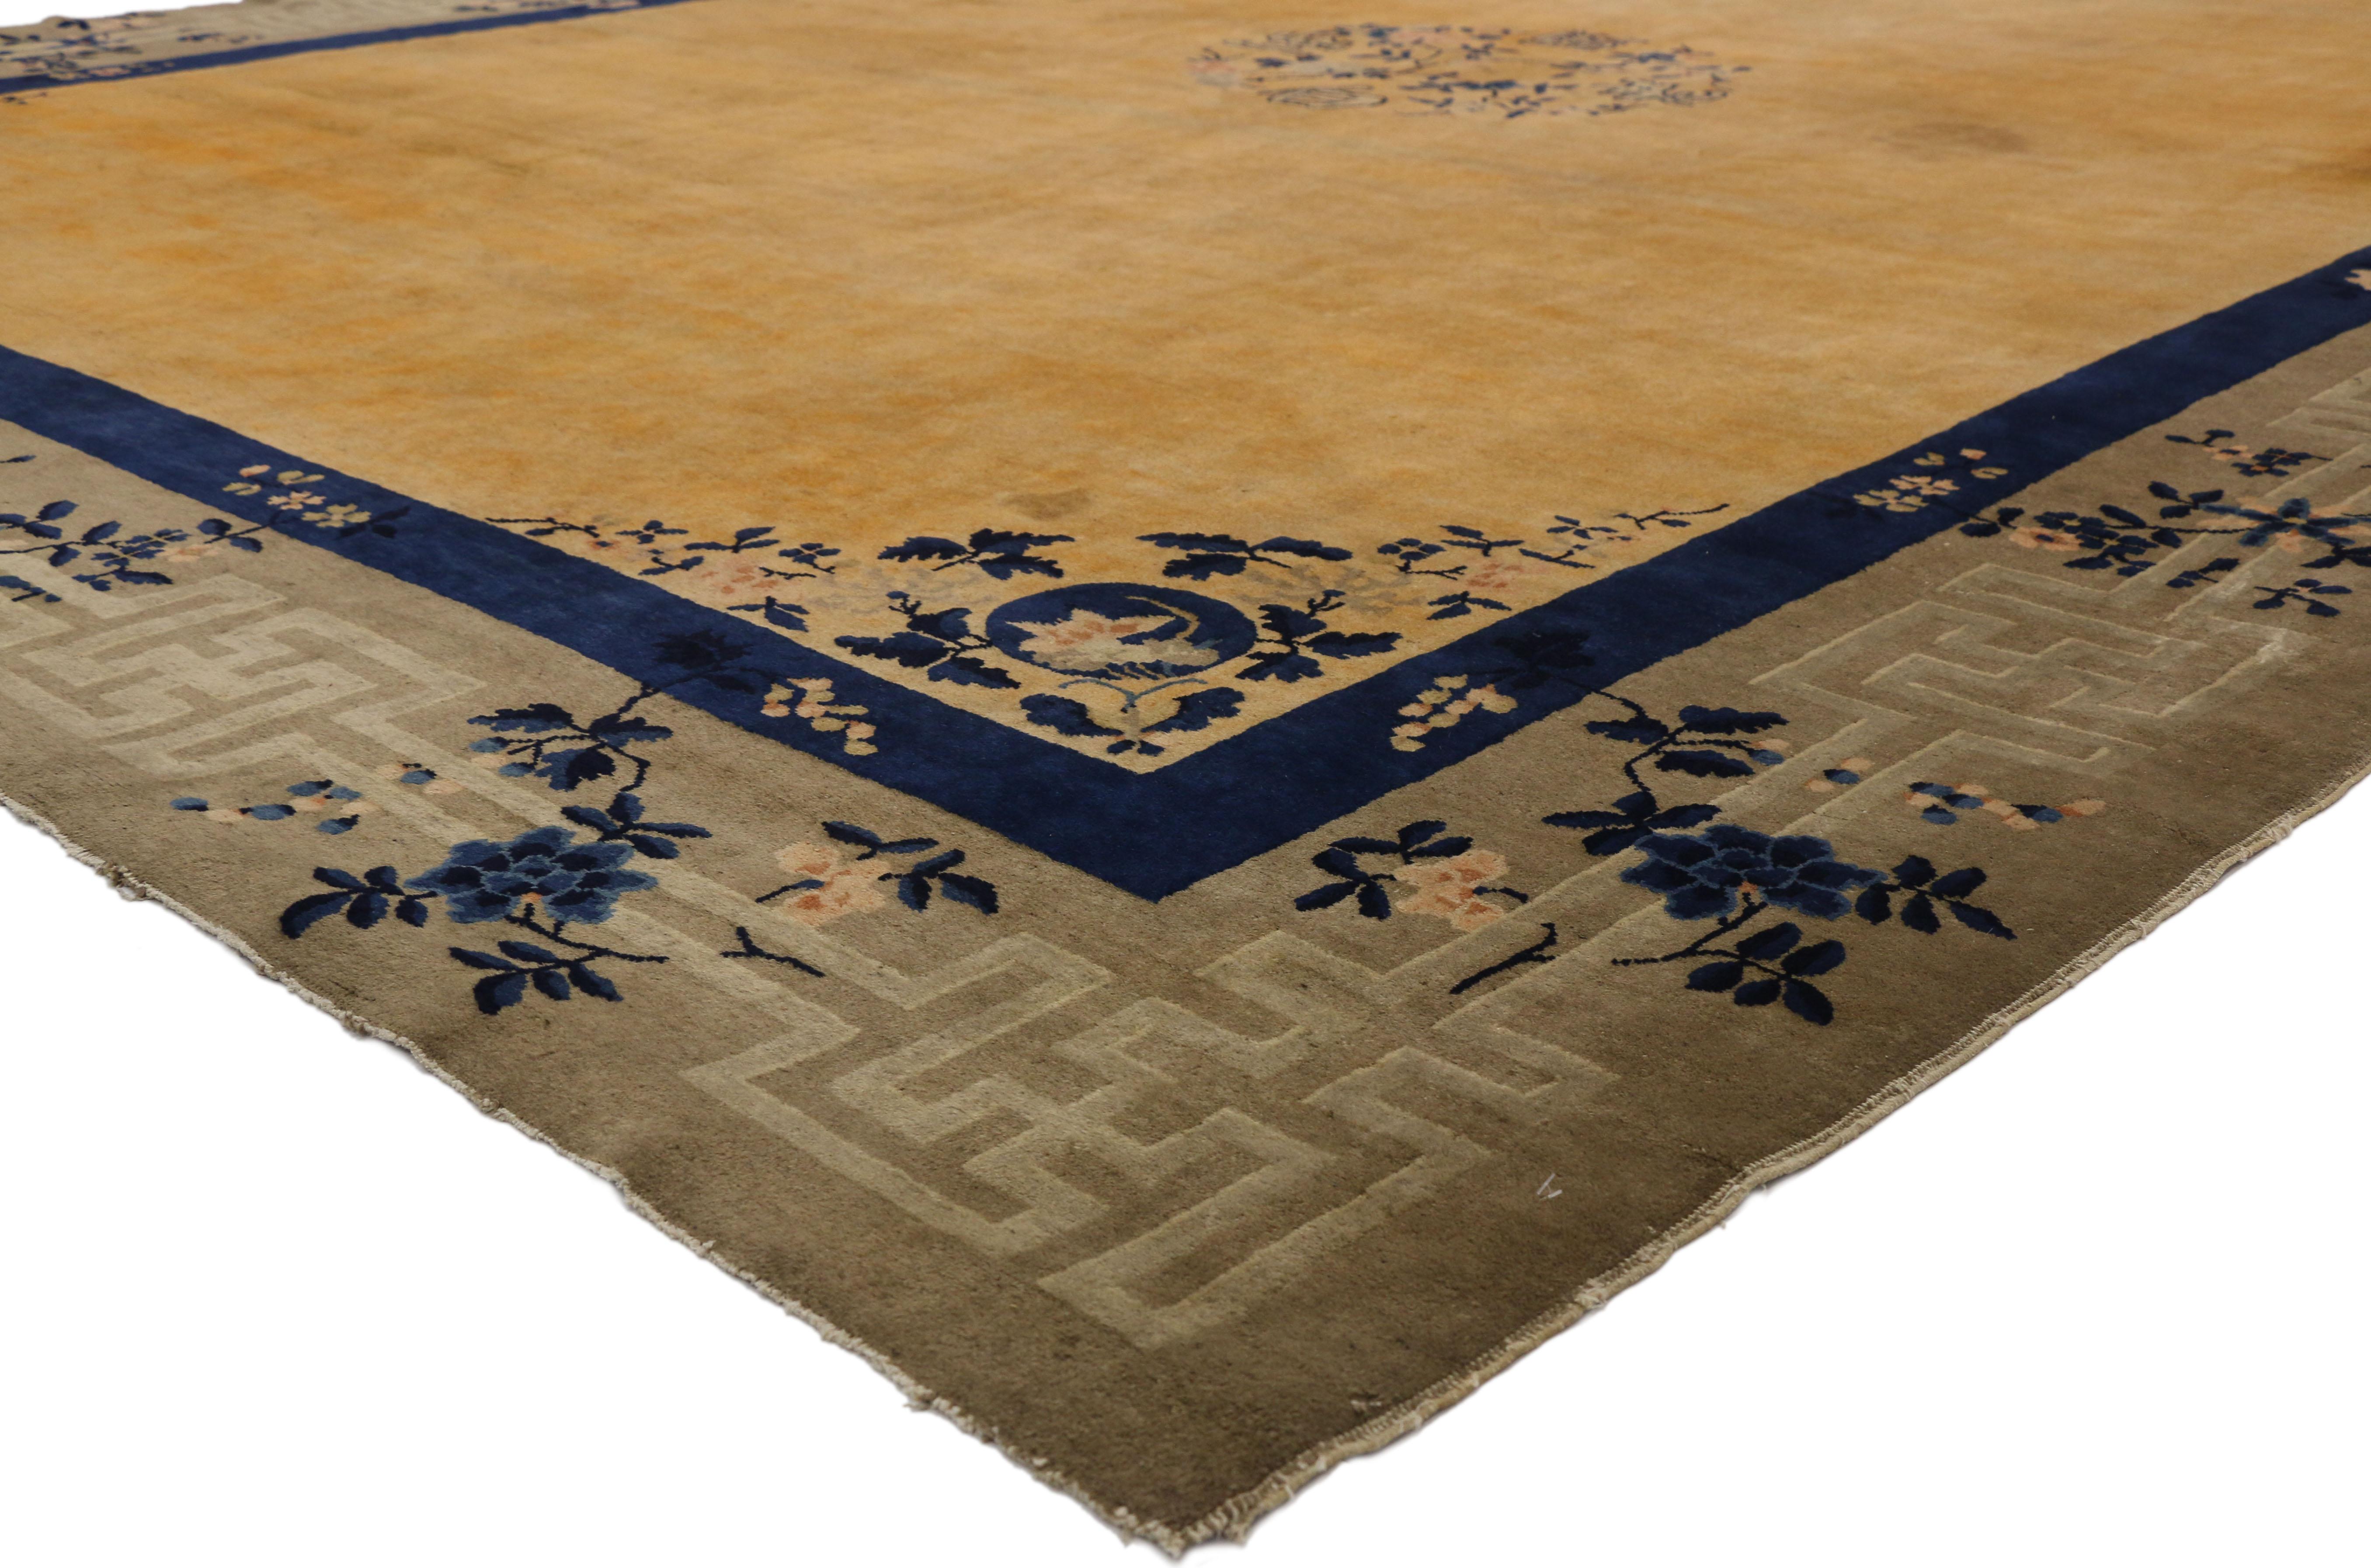 77267 Tapis de mariage chinois antique de style Art Déco Chinois. Ce tapis chinois ancien en laine noué à la main présente un médaillon arrondi à centre ouvert flottant au centre d'un champ jaune d'or. Le médaillon est composé de quatre caractères